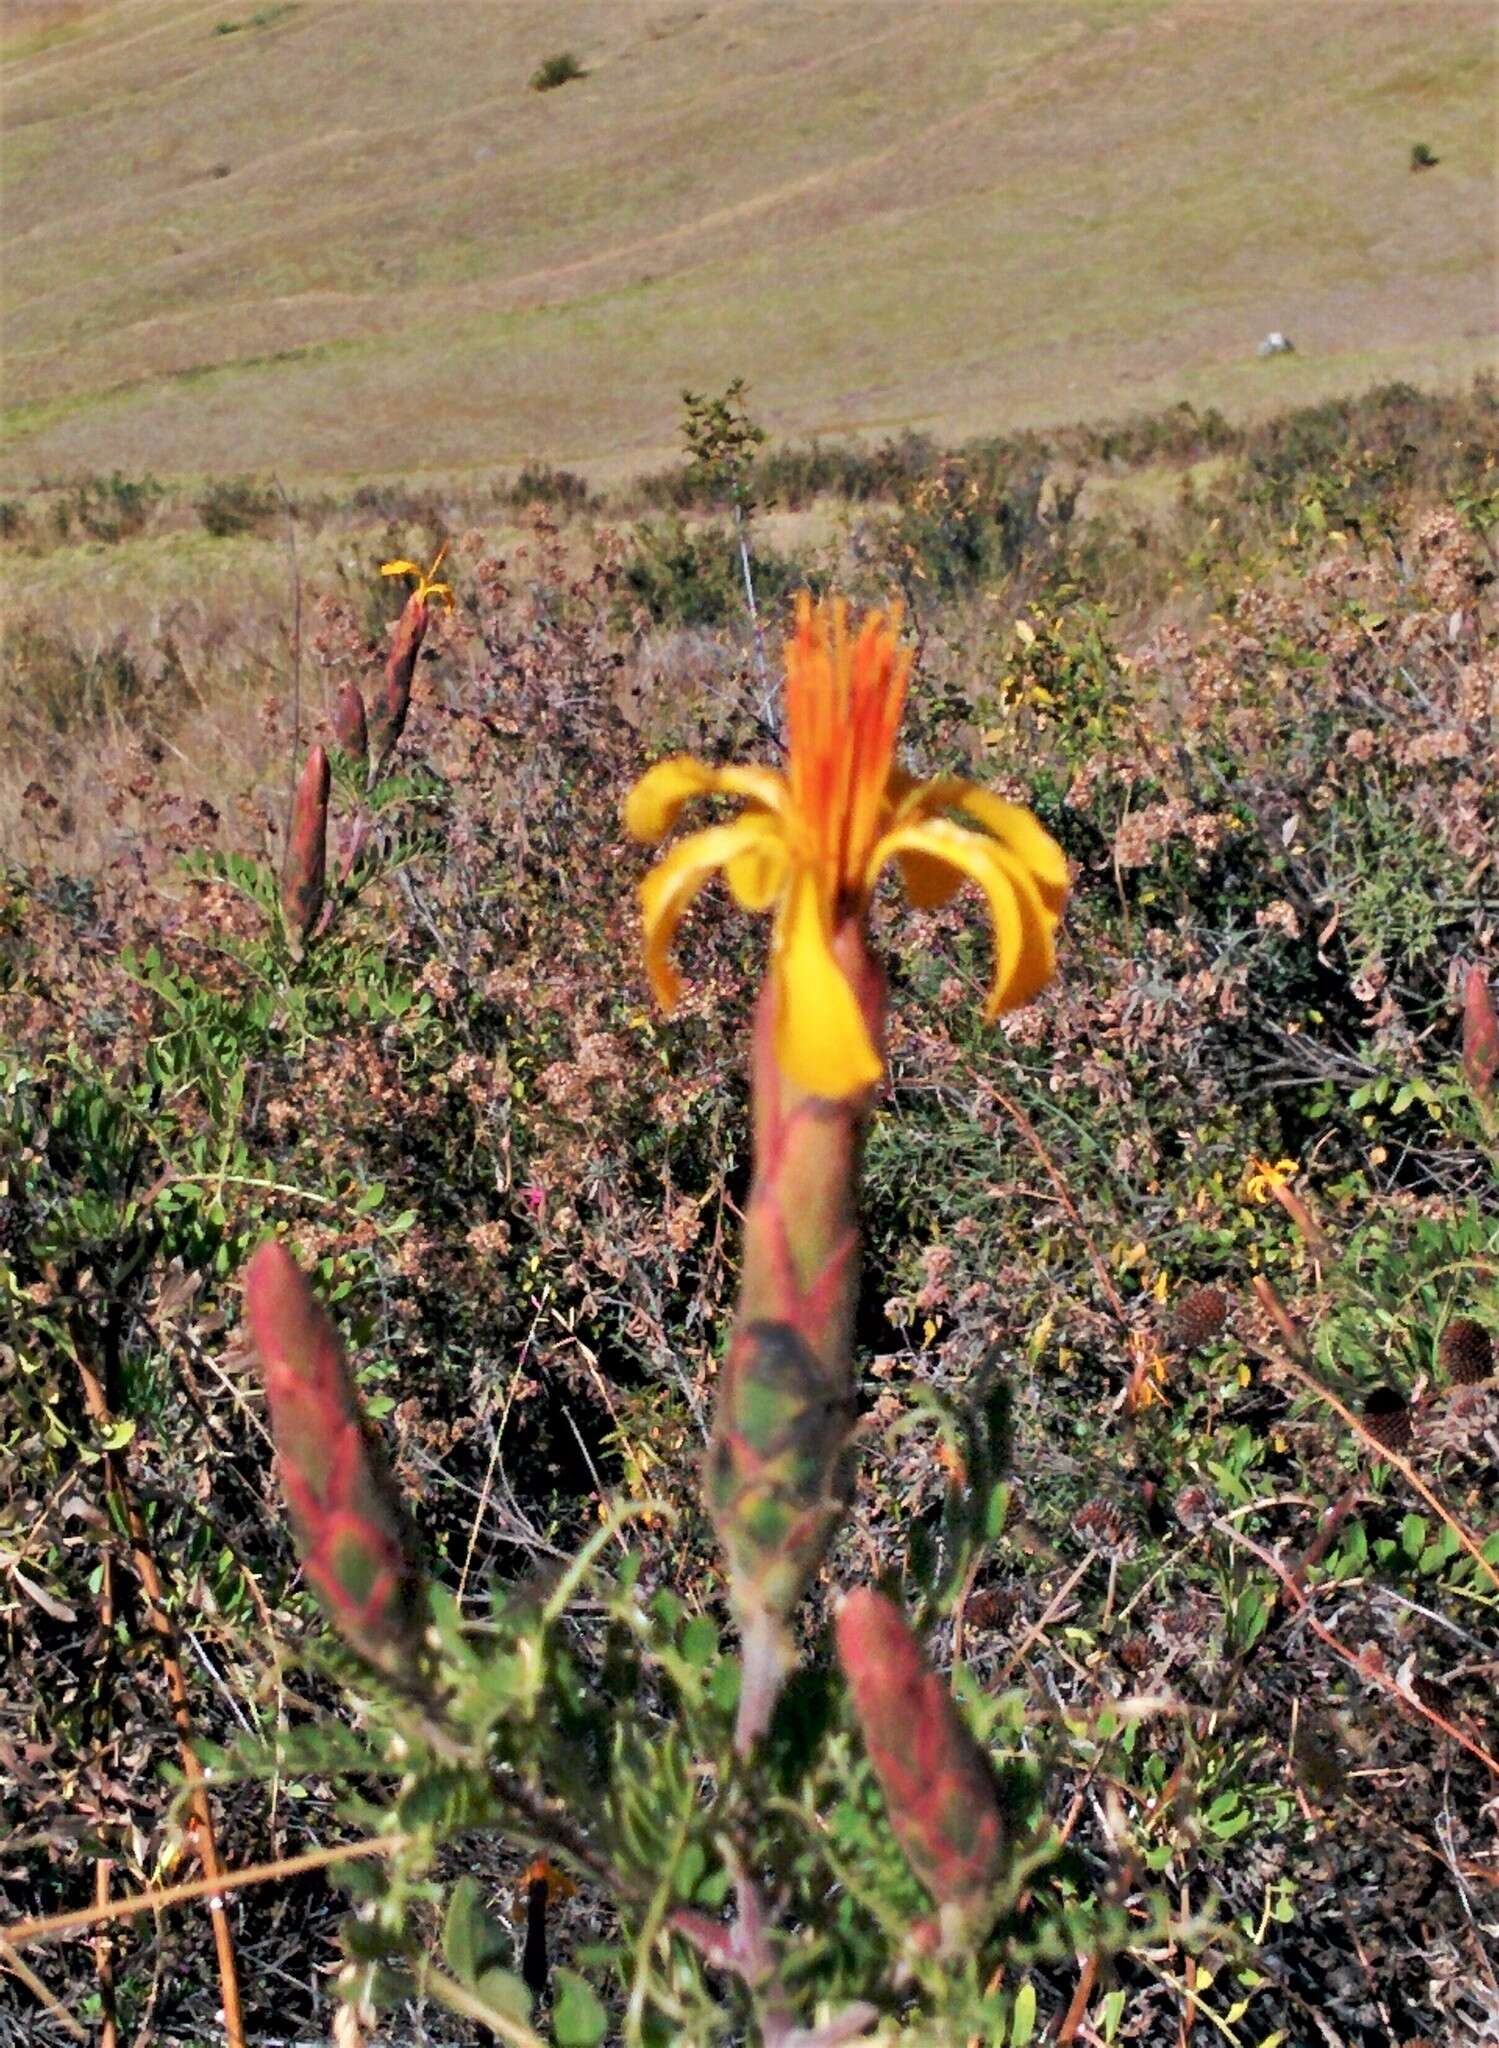 Image of Mutisia acuminata Ruiz & Pav.